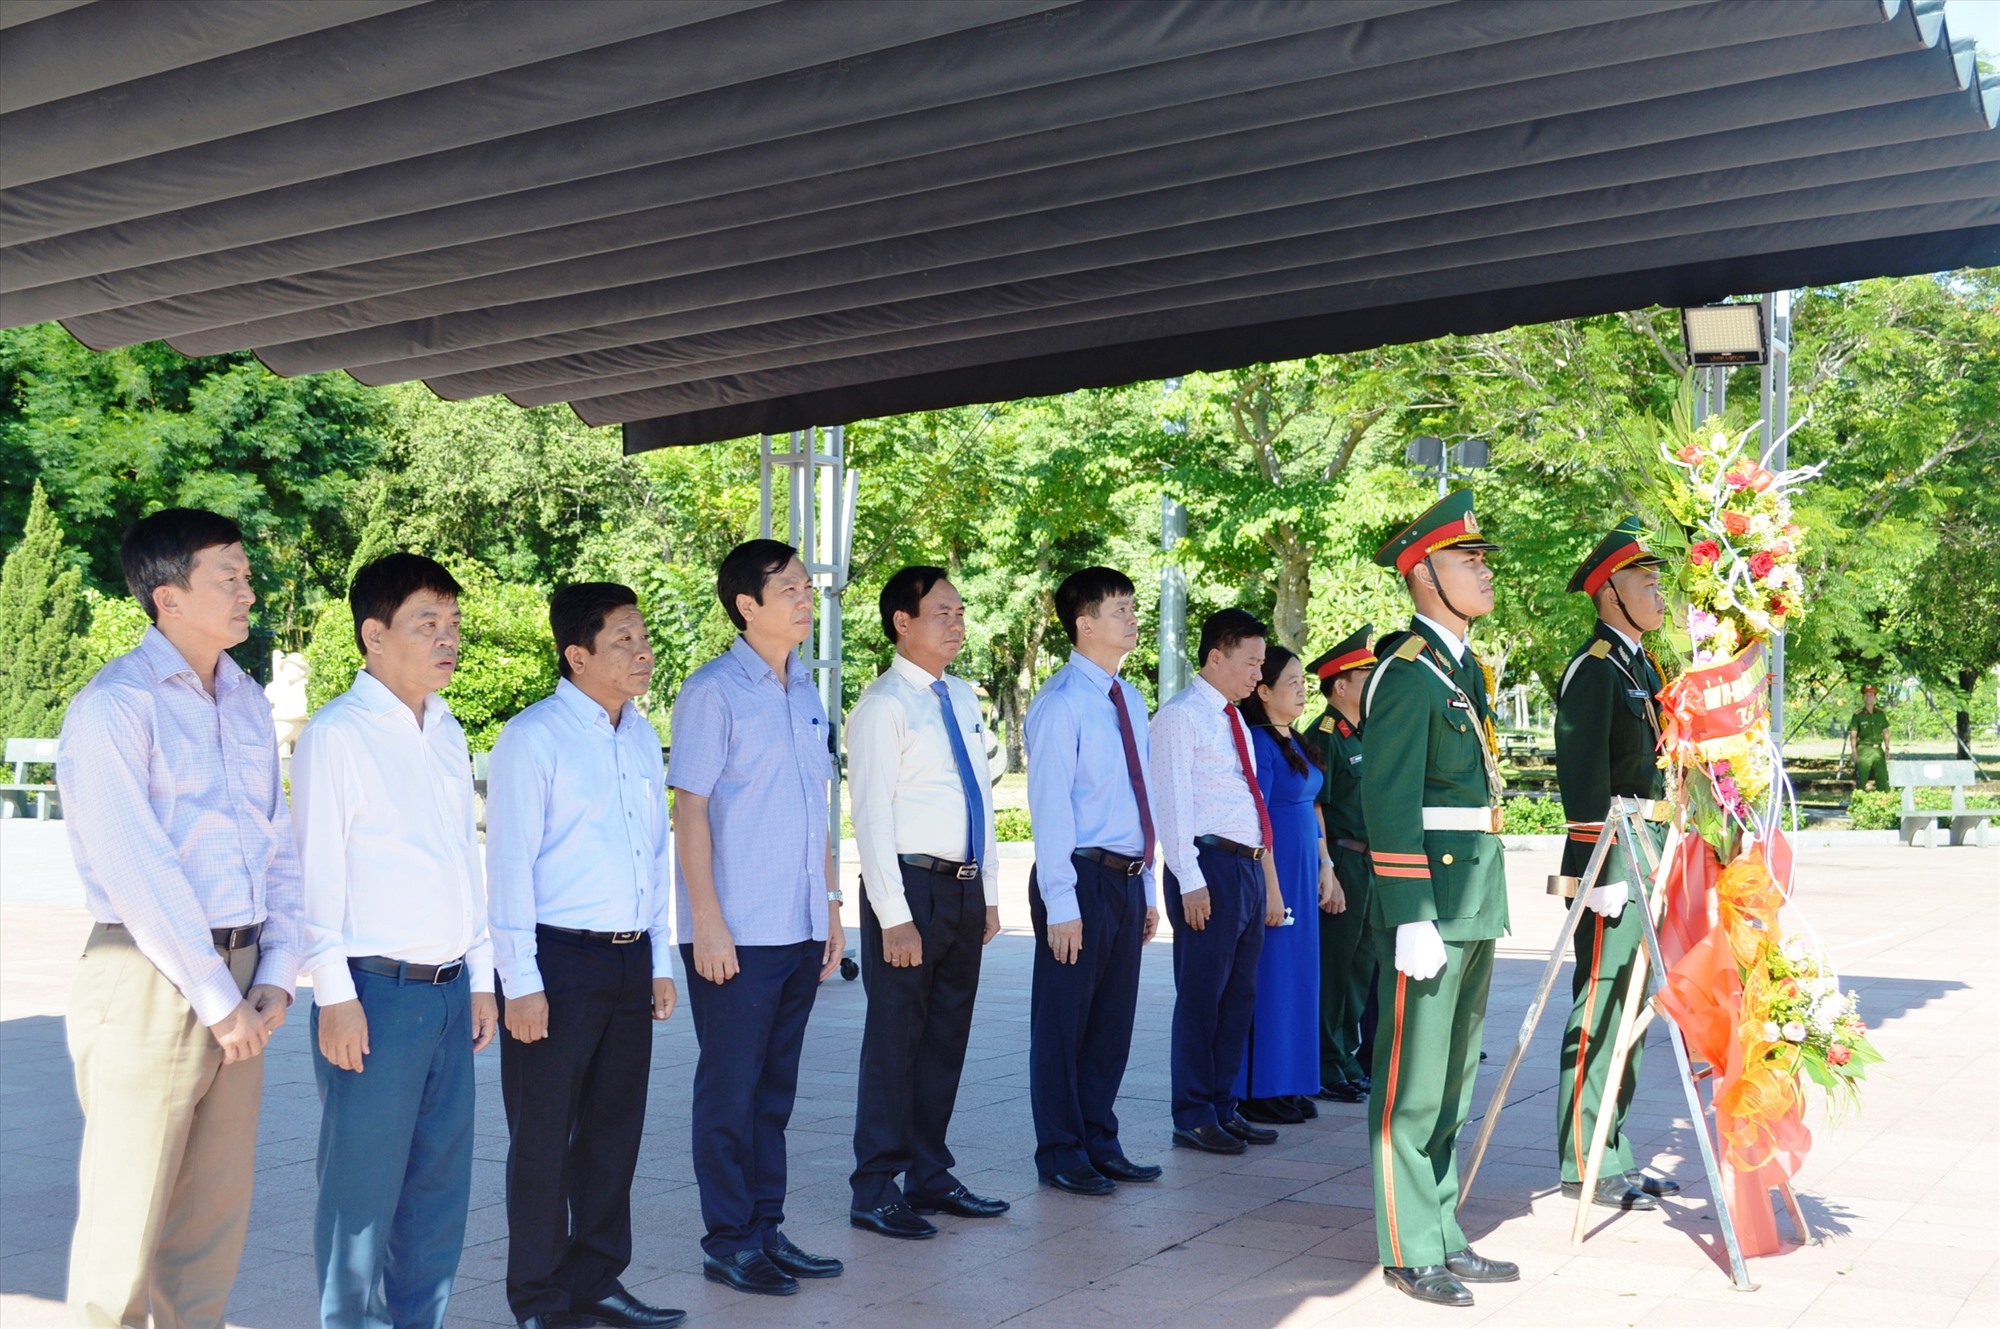 Lãnh đạo tỉnh và các đại biểu dành phút mặc niệm tưởng nhớ, tri ân các anh hùng liệt sĩ tại Thành Cổ Quảng Trị - Ảnh: ĐV